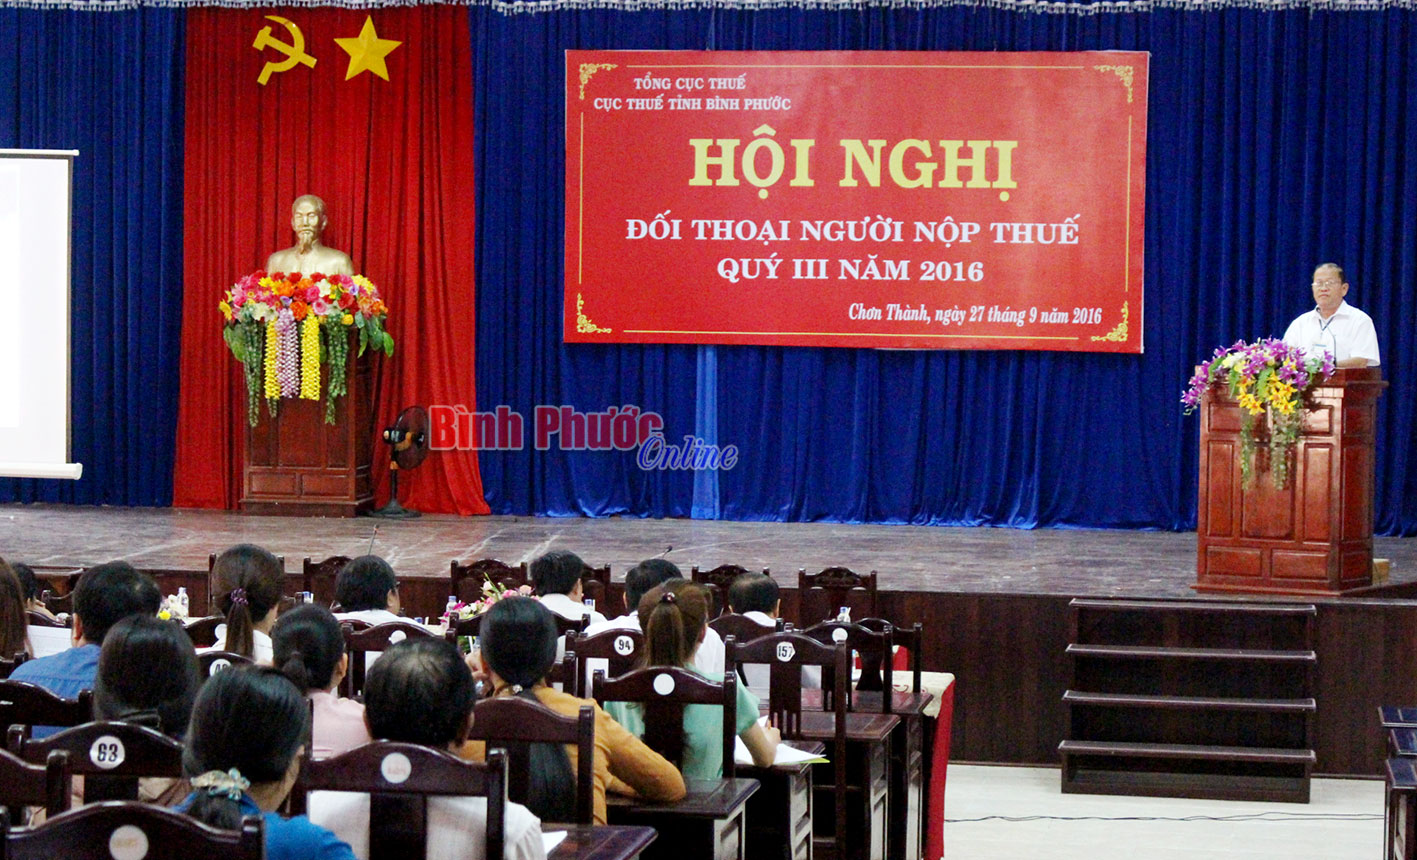 Hội nghị đối thoại người nộp thuế được Cục Thuế tổ chức vào quý 3/2016 tại Chơn Thành